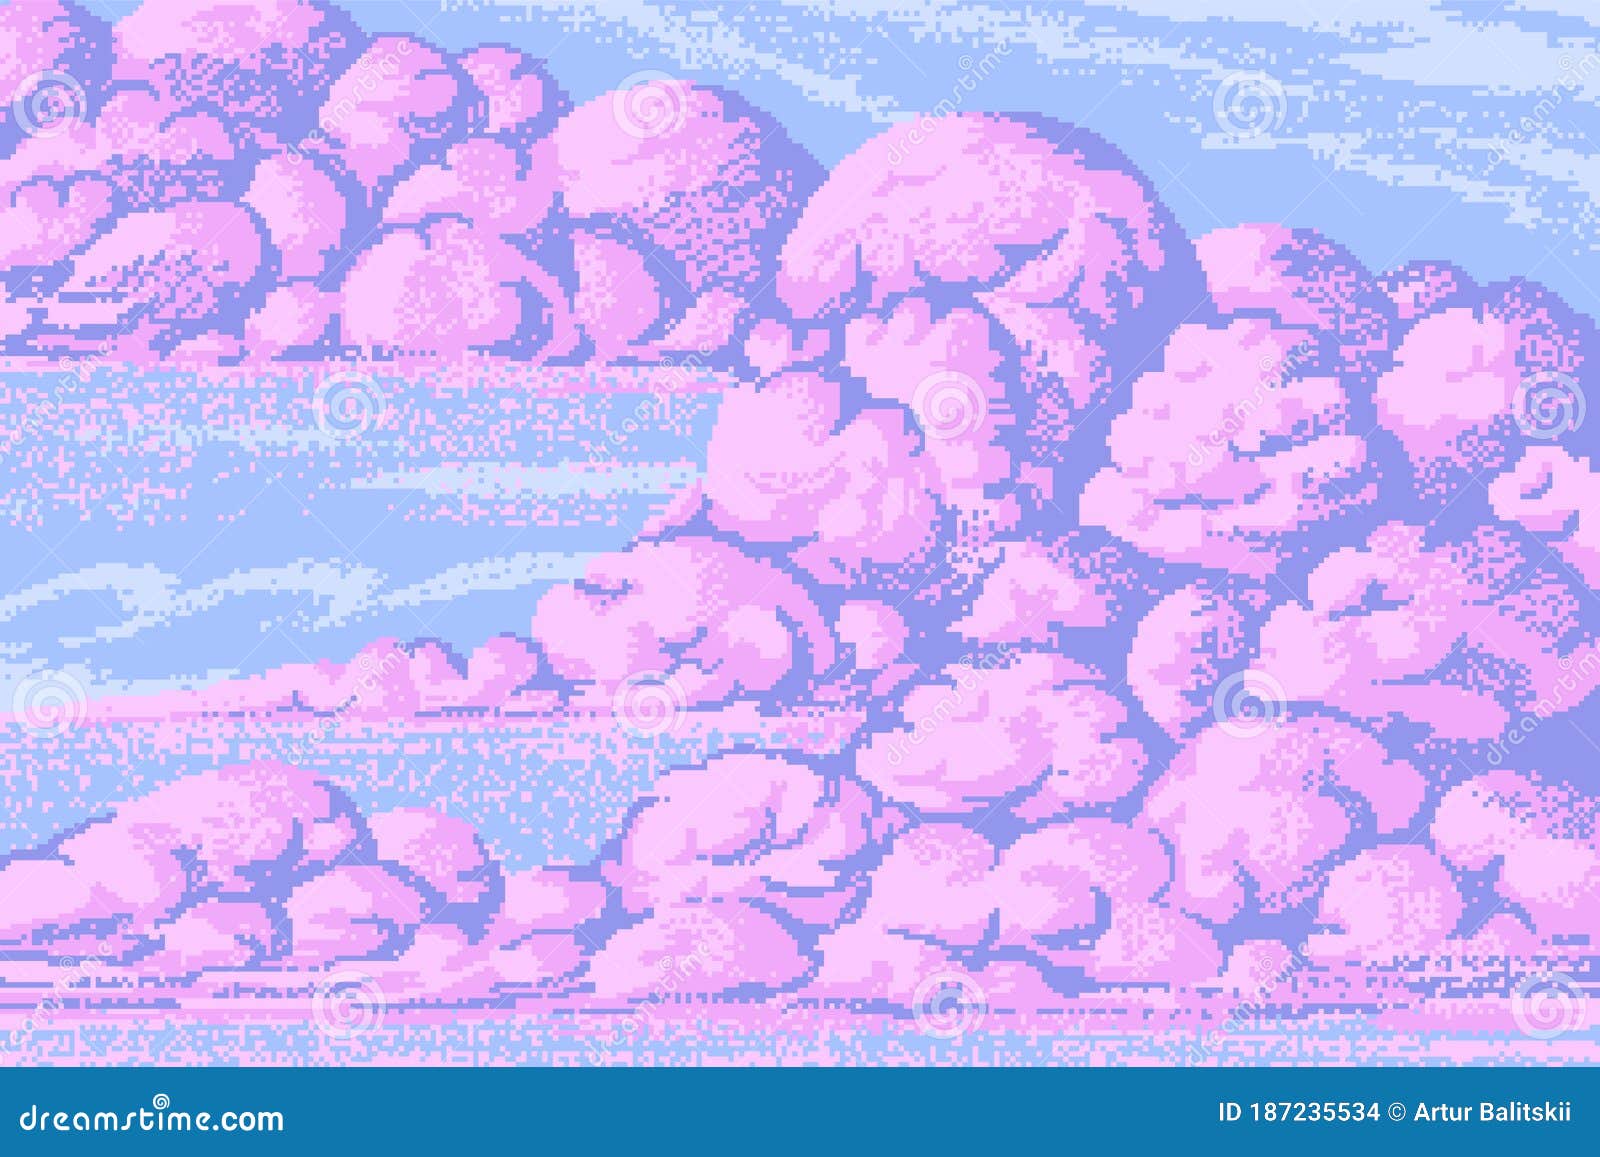 Hãy khám phá đám mây đầy màu sắc và hình ảnh 8 bit đầy sáng tạo. Cùng ngắm nhìn bầu trời phép thuật màu hồng tuyệt đẹp và tìm hiểu cách sử dụng pixel art để tạo ra các hình ảnh độc đáo. Hãy áp dụng sự sáng tạo của bạn để tạo ra những tác phẩm pixel art xuất sắc.